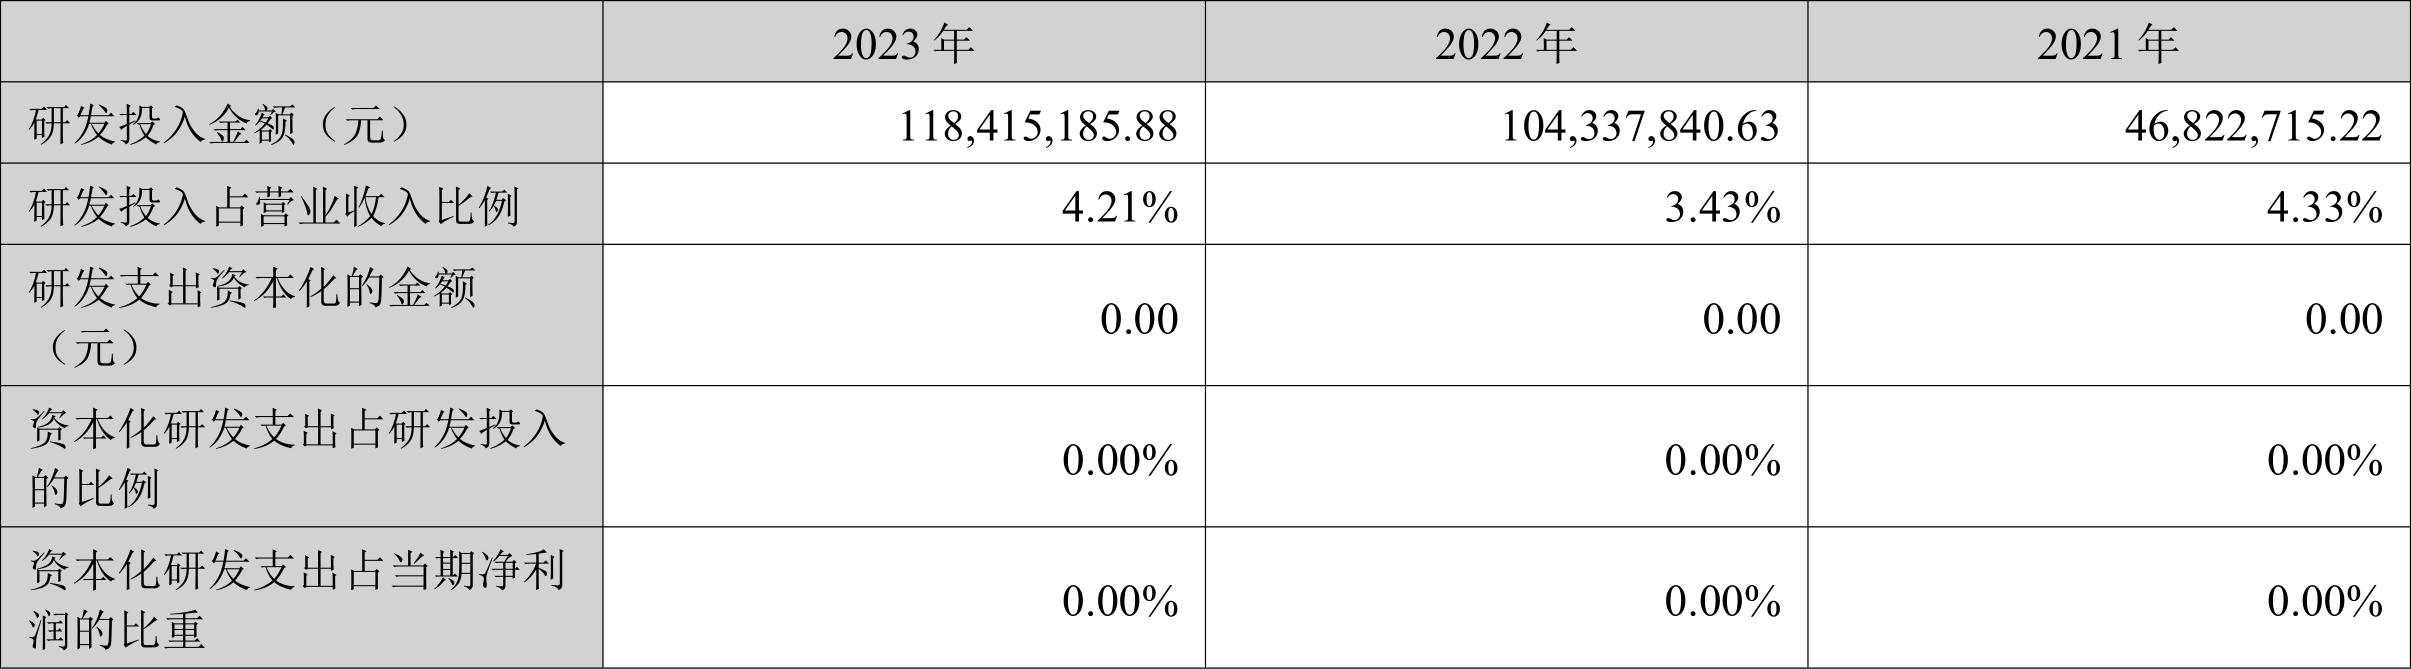 瑞丰新材：2023年净利润同比增长3.12% 拟10派13元